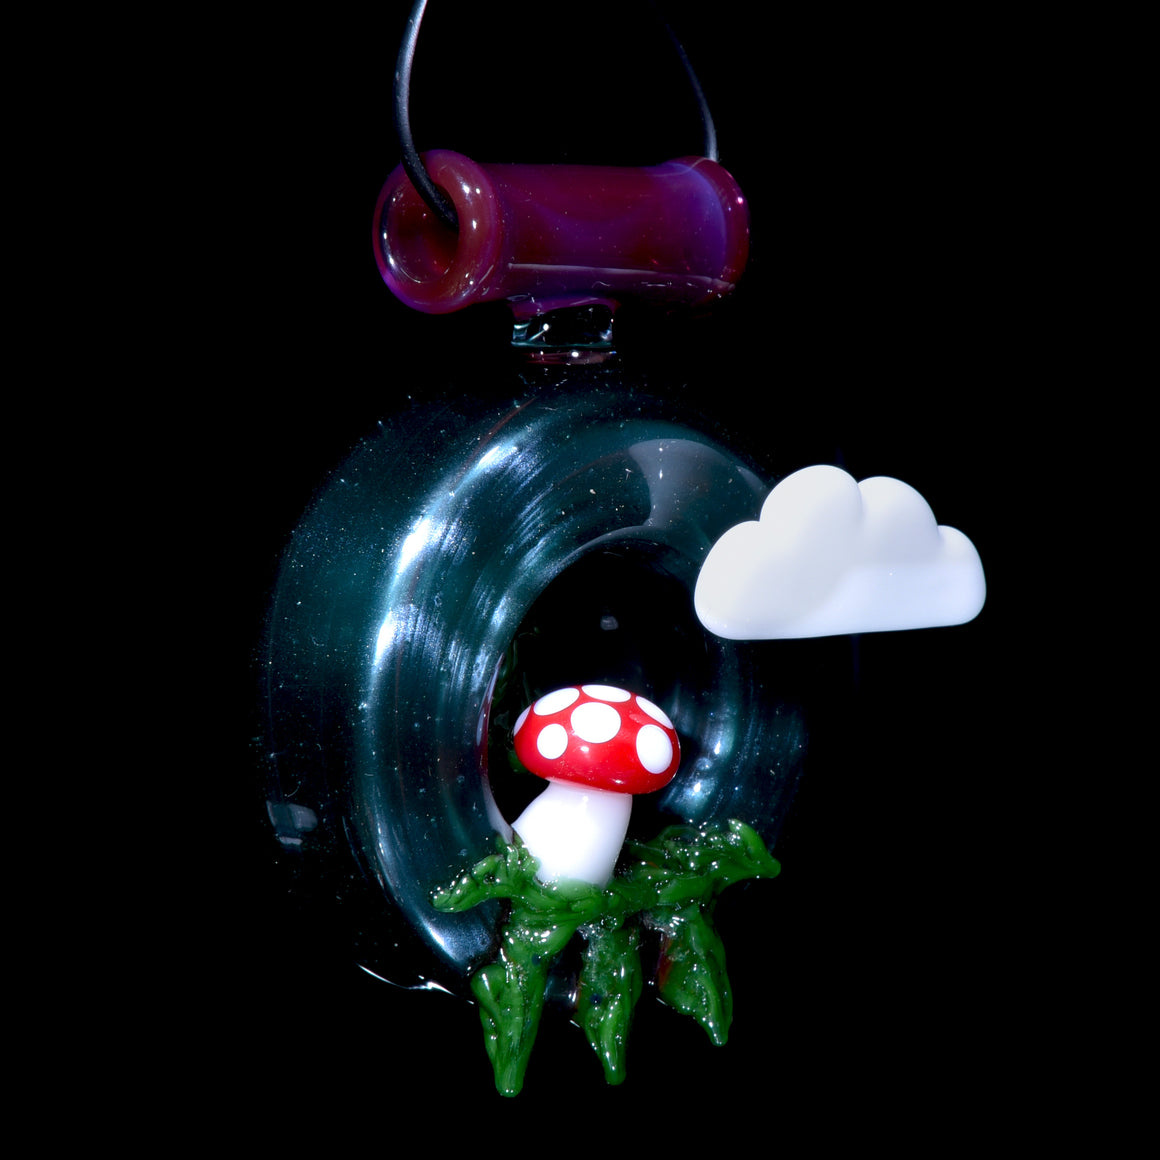 Colorform Scenery Pendant - Cloud, Mushroom & Trees